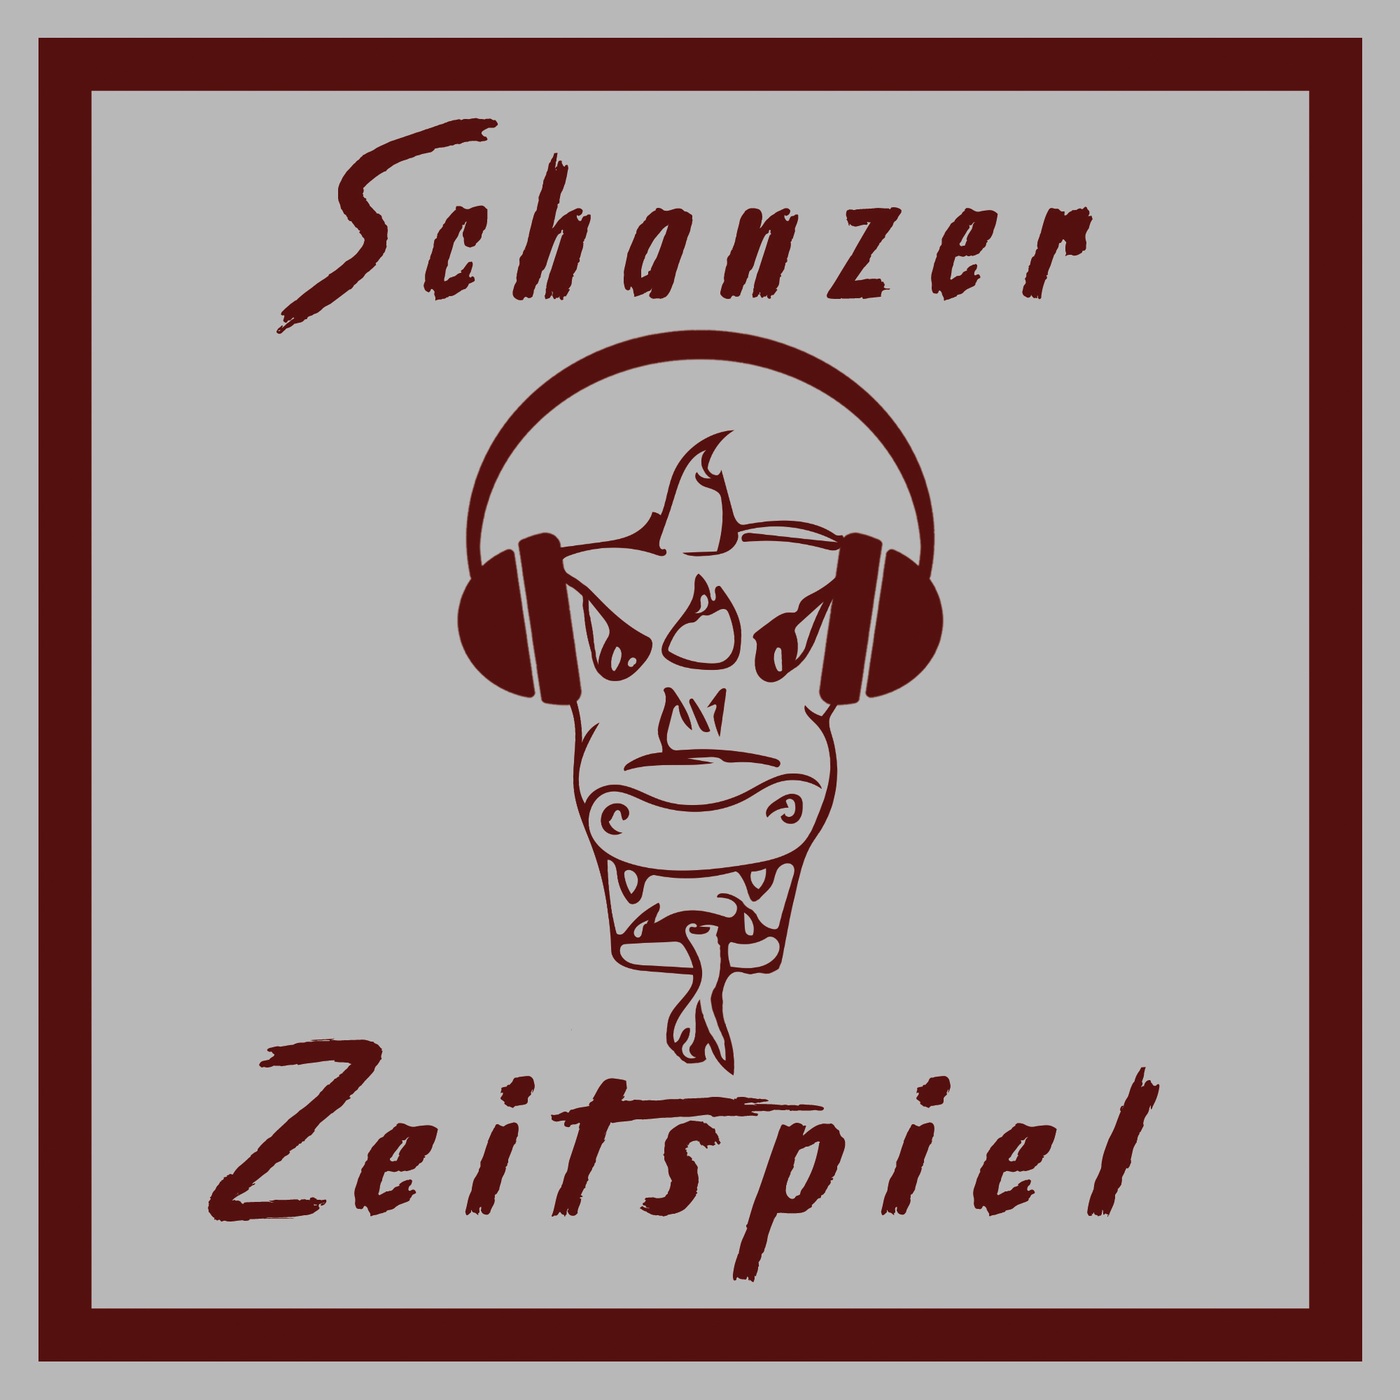 Schanzer Zeitspiel | Episode 58 | Testroet-Festspiele